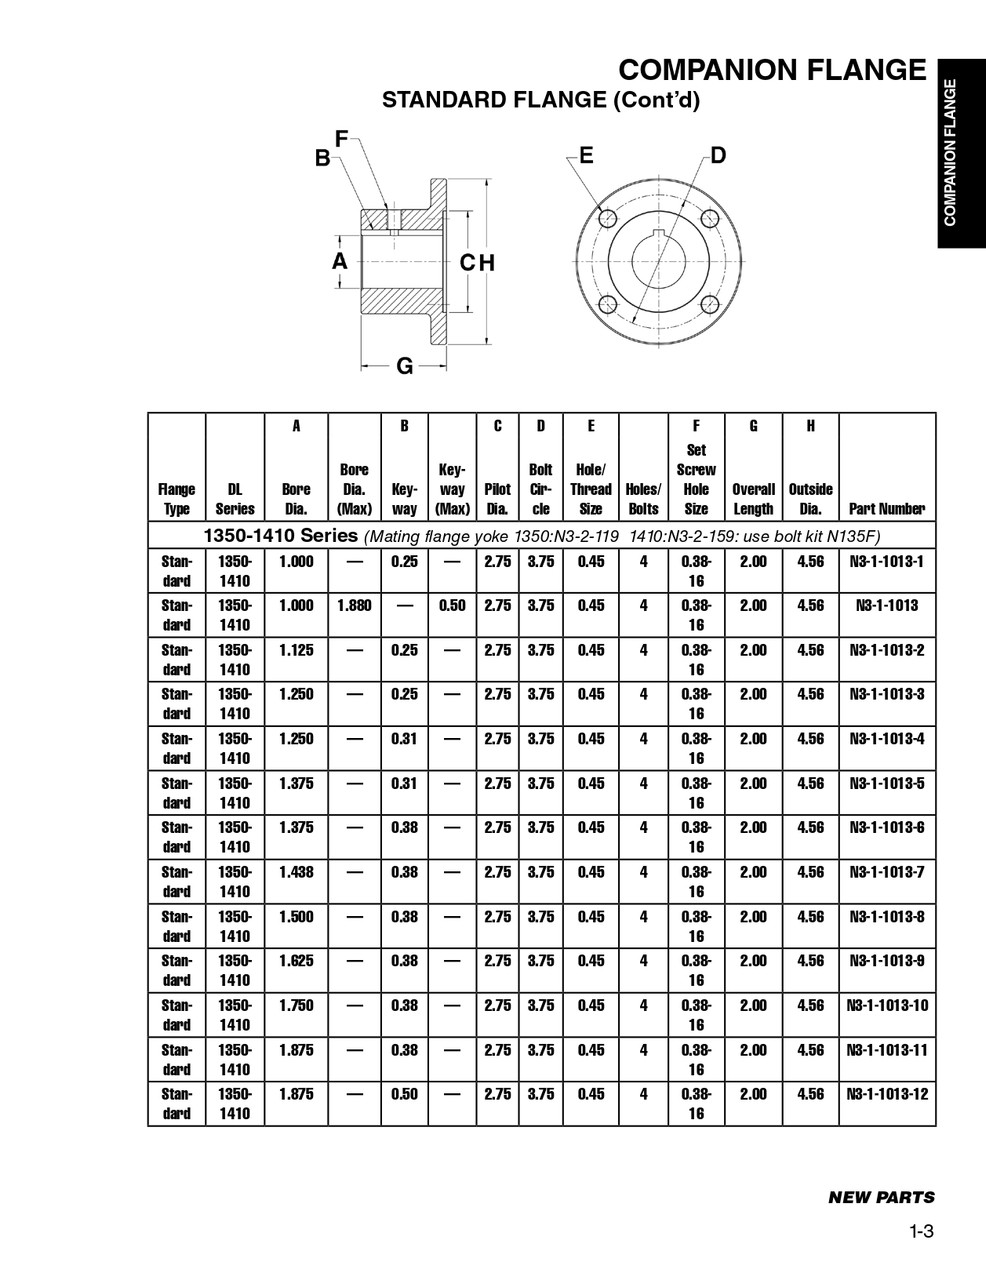 1.4375" Round - Spicer® 1350/1410 Series Standard Comapnion Flange  N3-1-1013-7